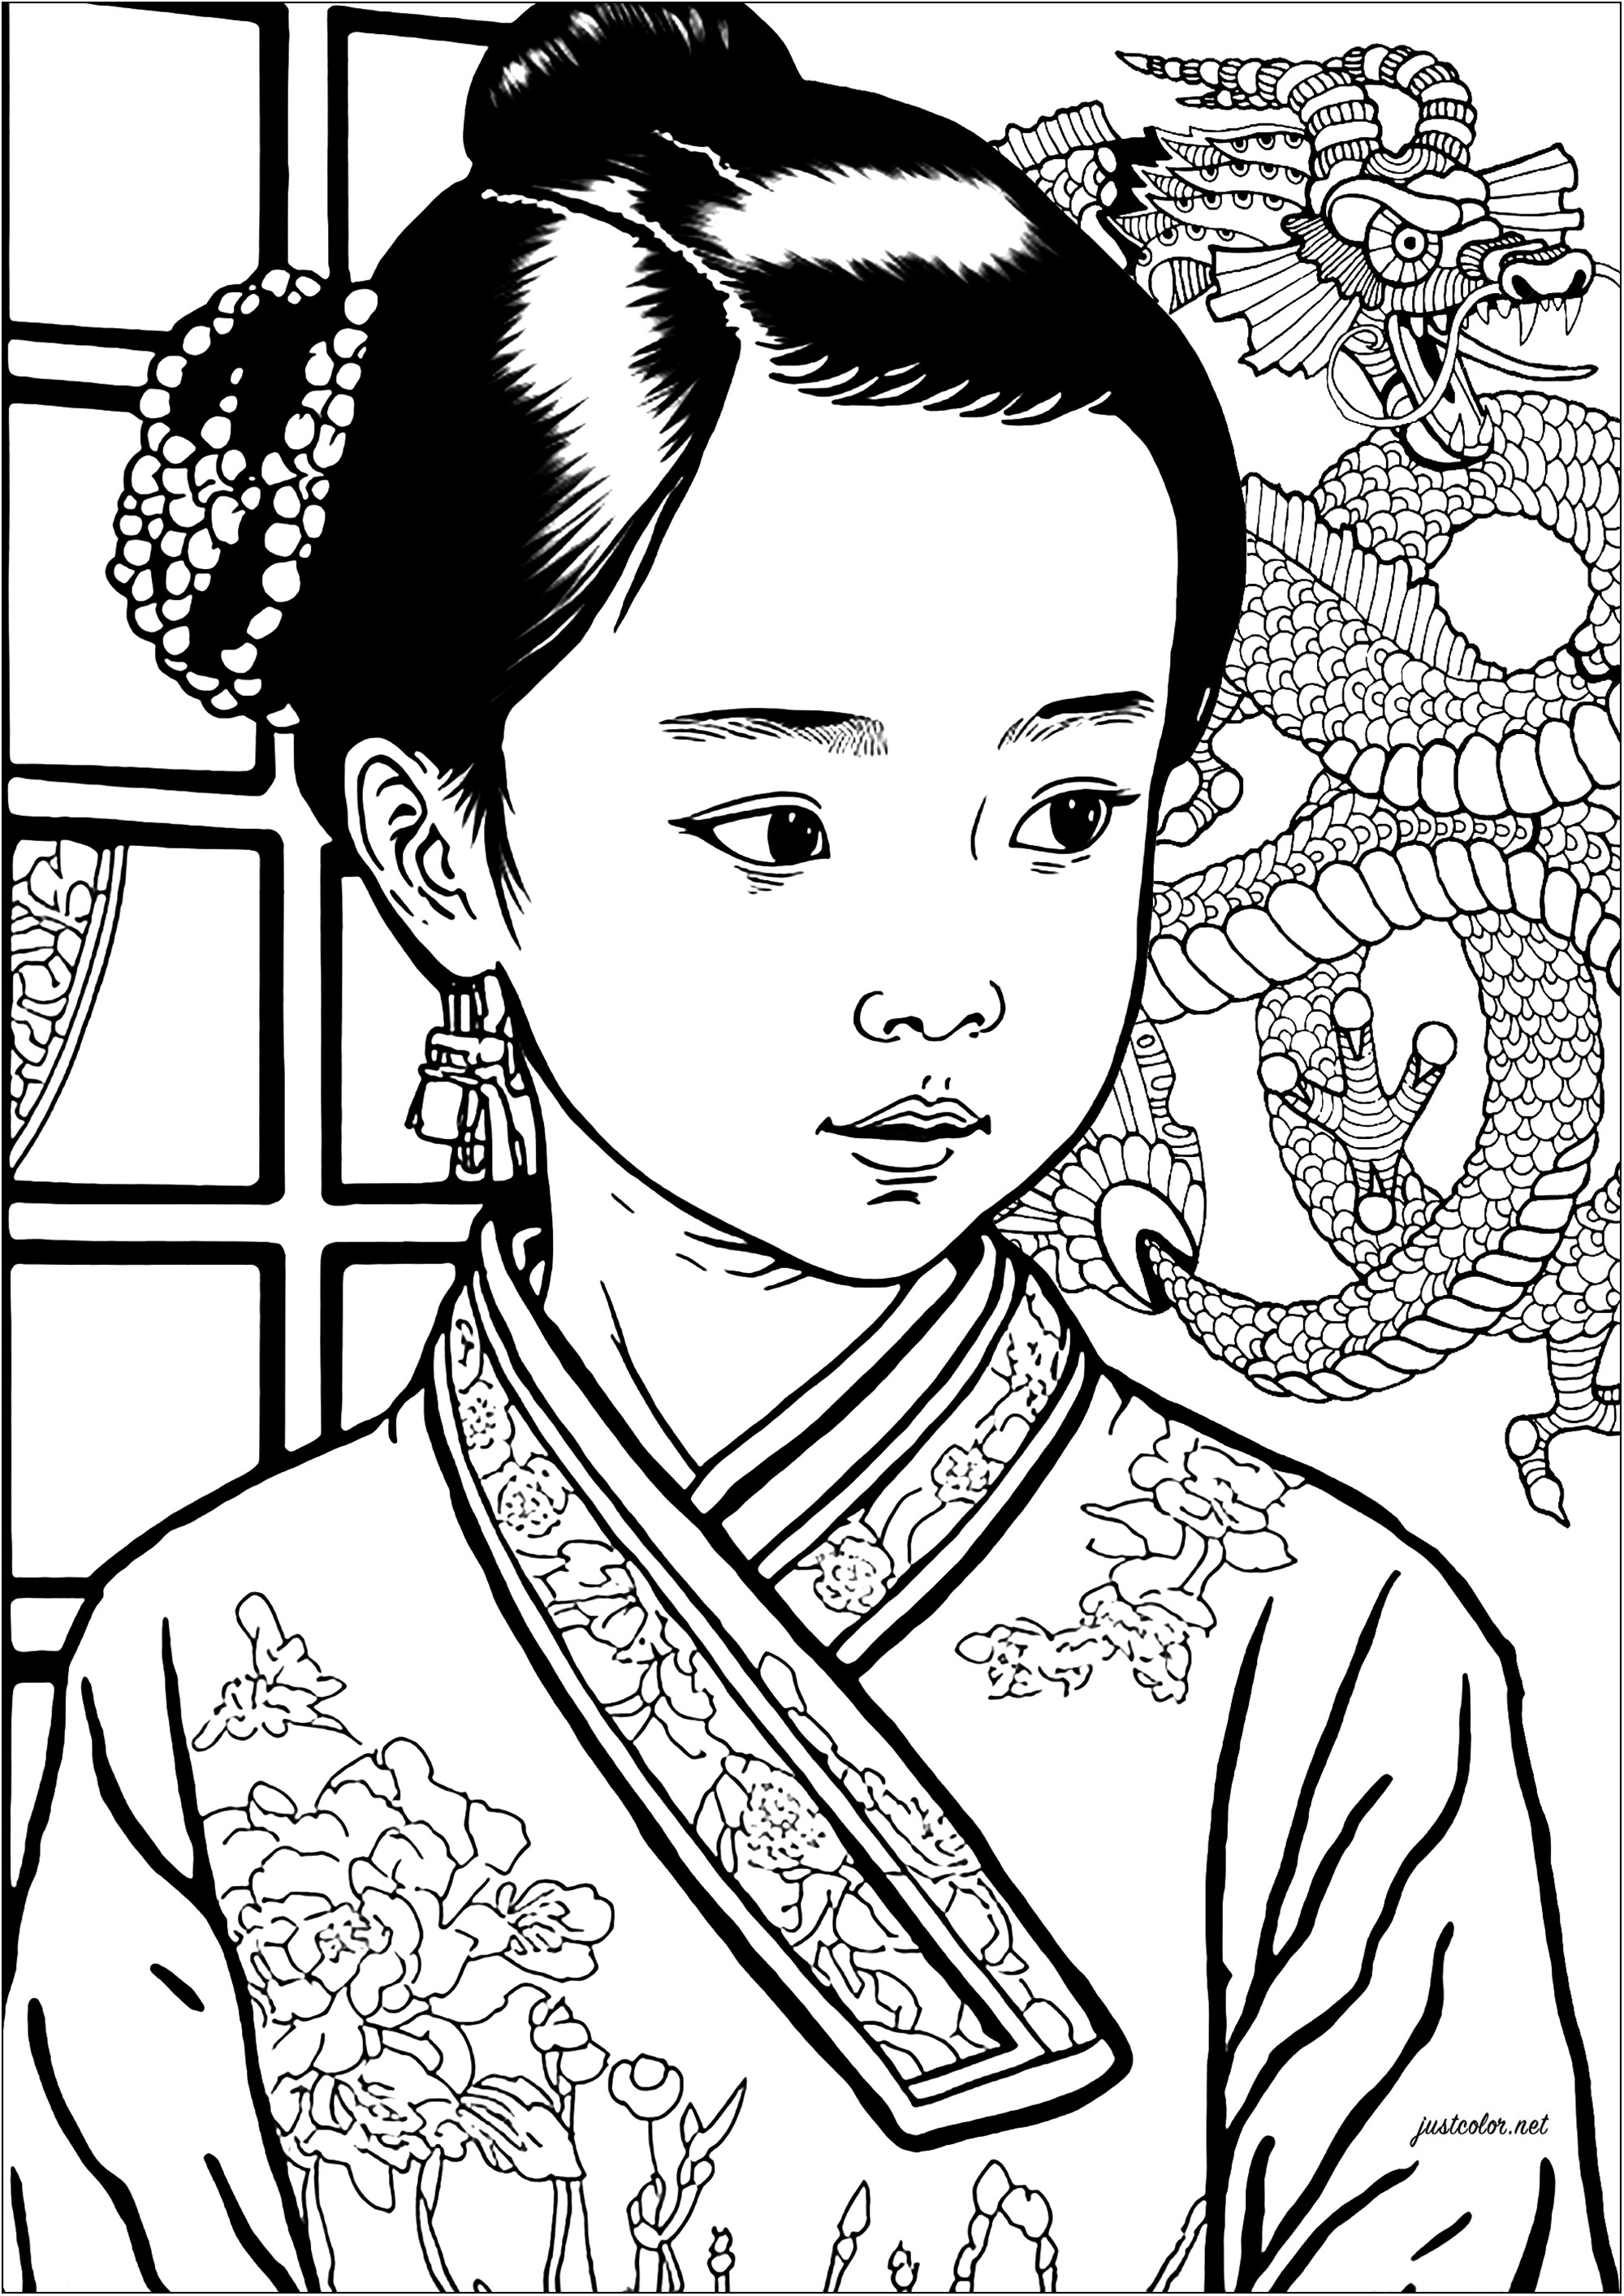 Schöne Malvorlage von einem chinesischen Mädchen im Kimono, mit einem Drachen im Hintergrund